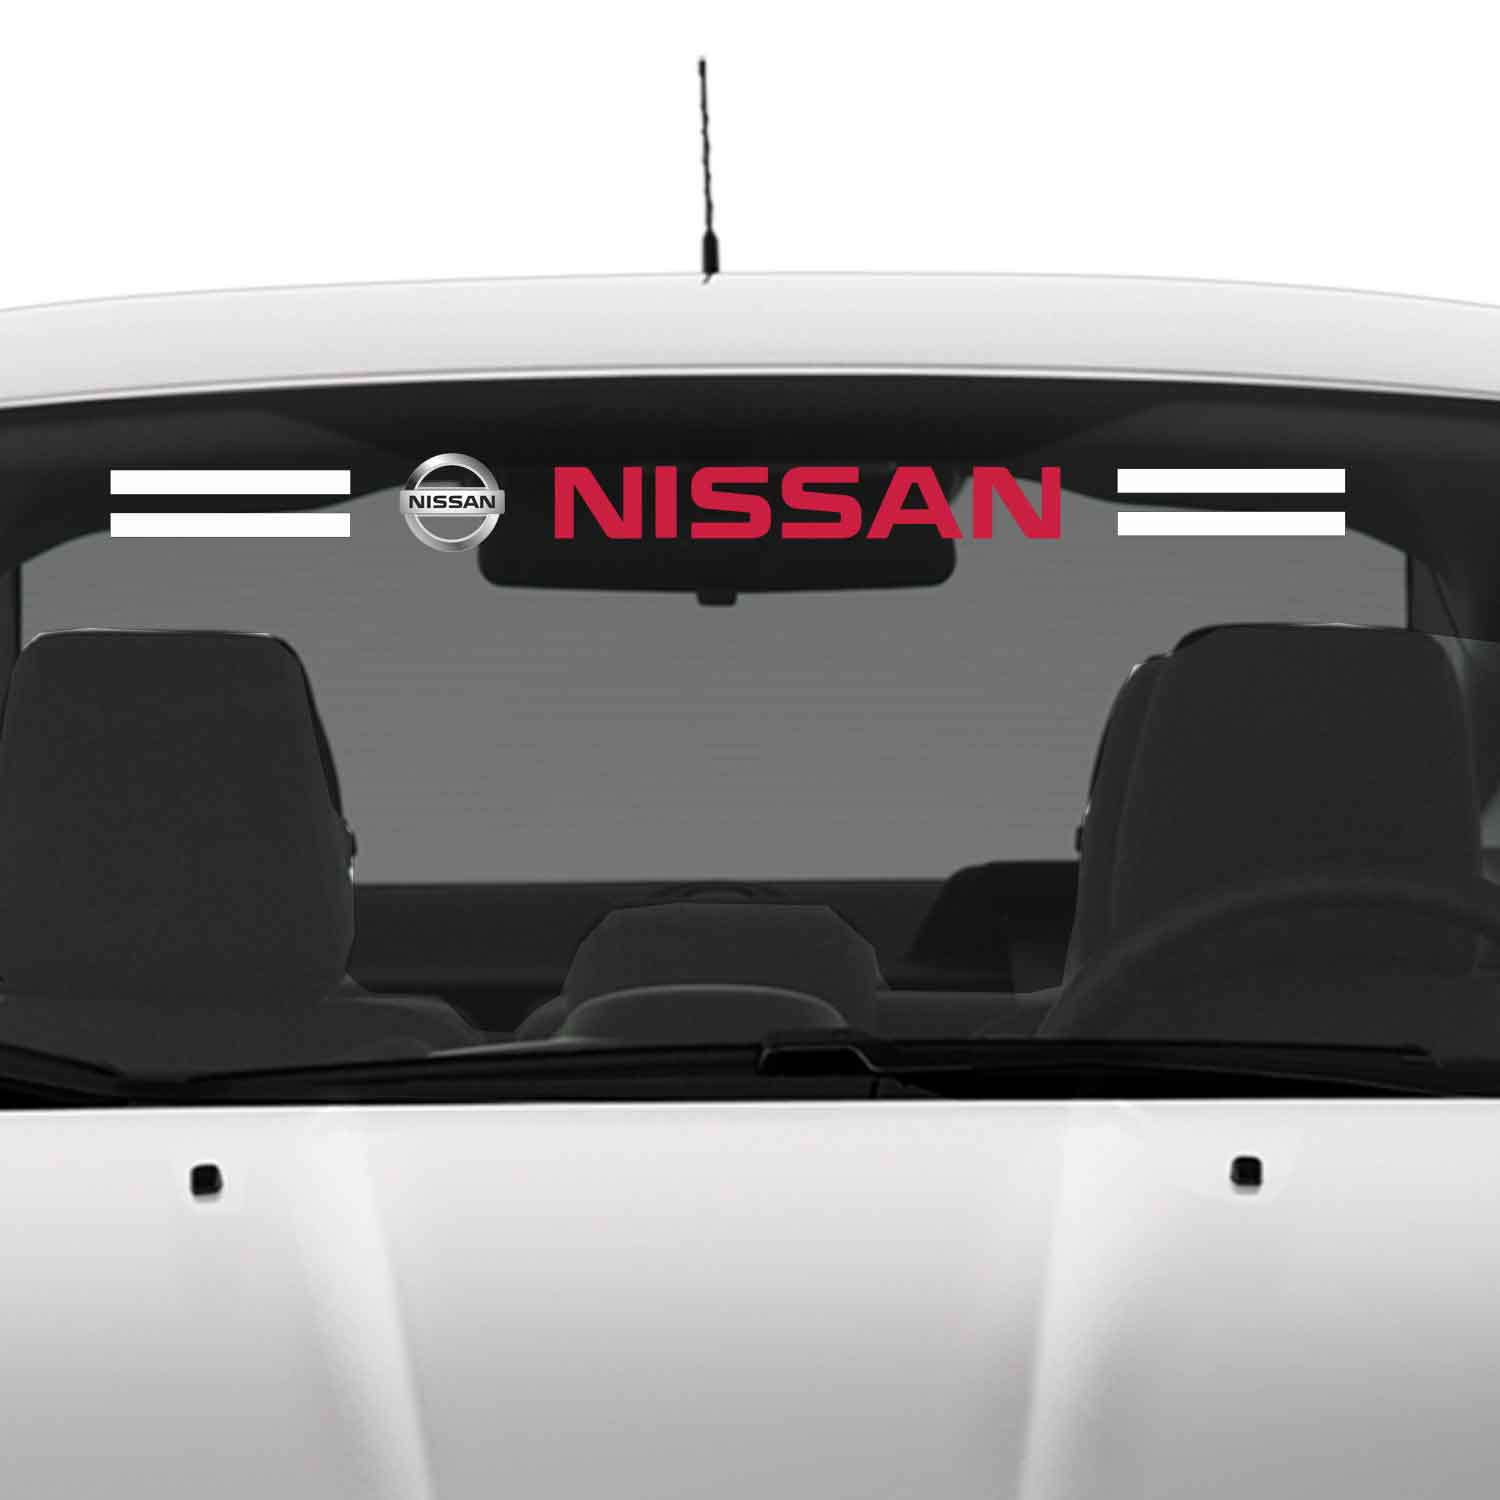 Nissan cam sticker 1 - Nissan Ön Arka Cam Uyumlu Sticker